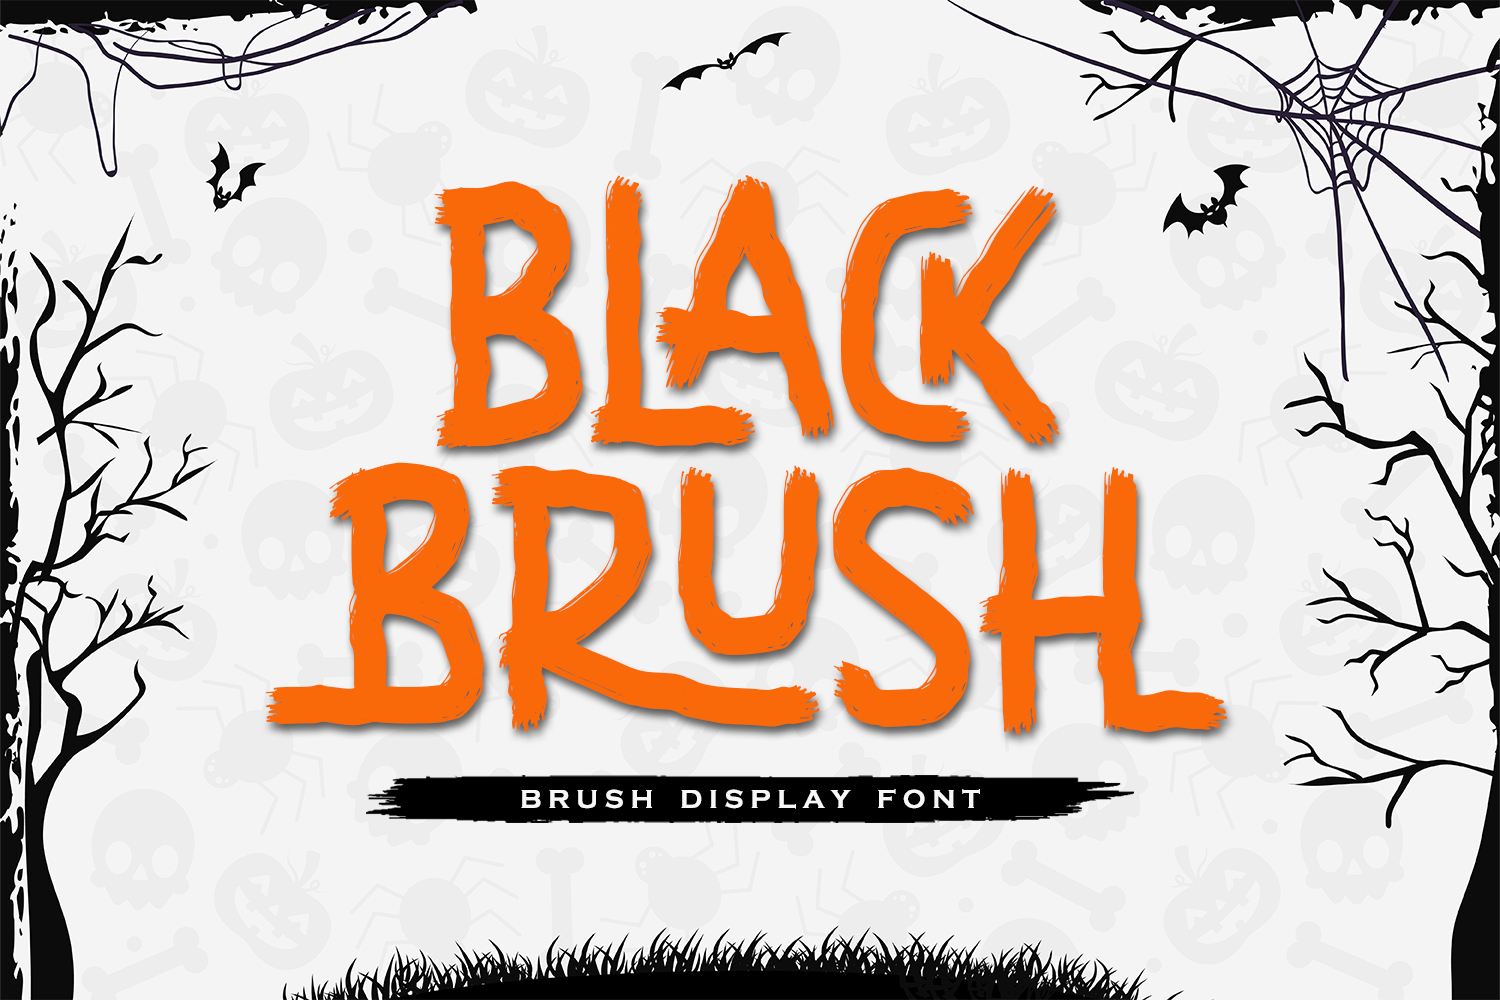 Black Brush Free Font